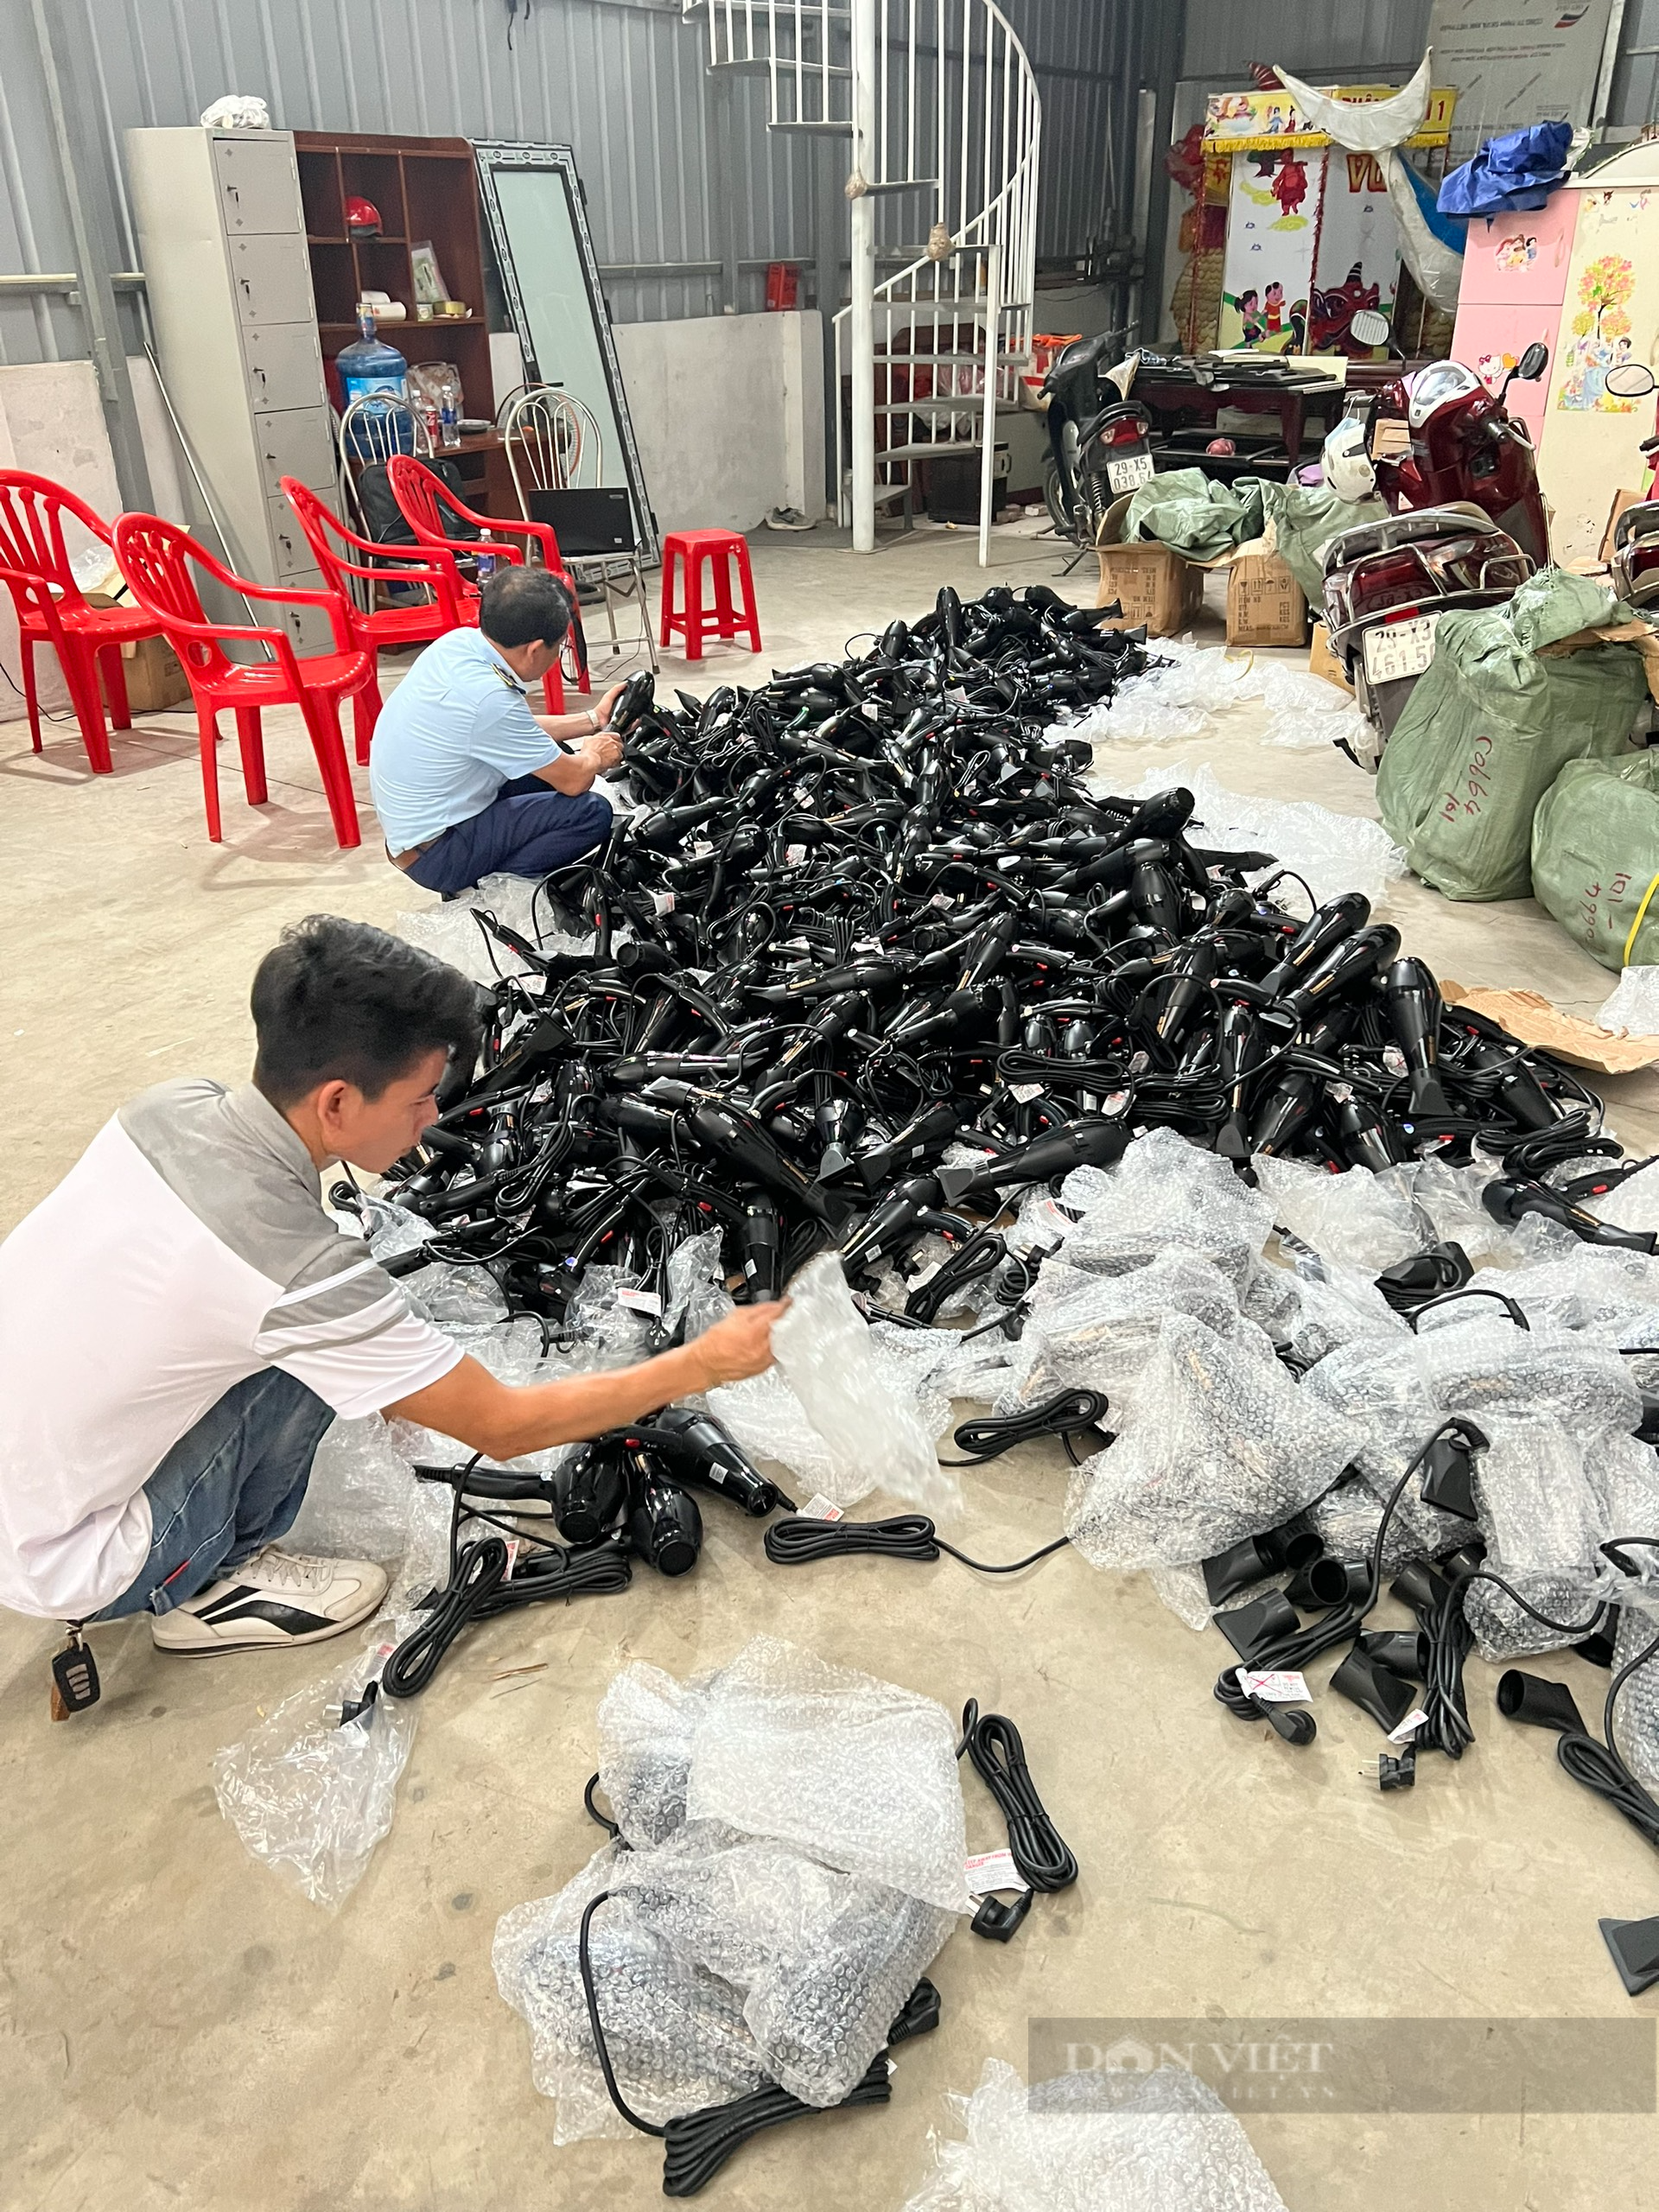 Hà Nội: Tạm giữ hàng trăm máy sấy nghi giả nhãn hiệu Panasonic - Ảnh 1.